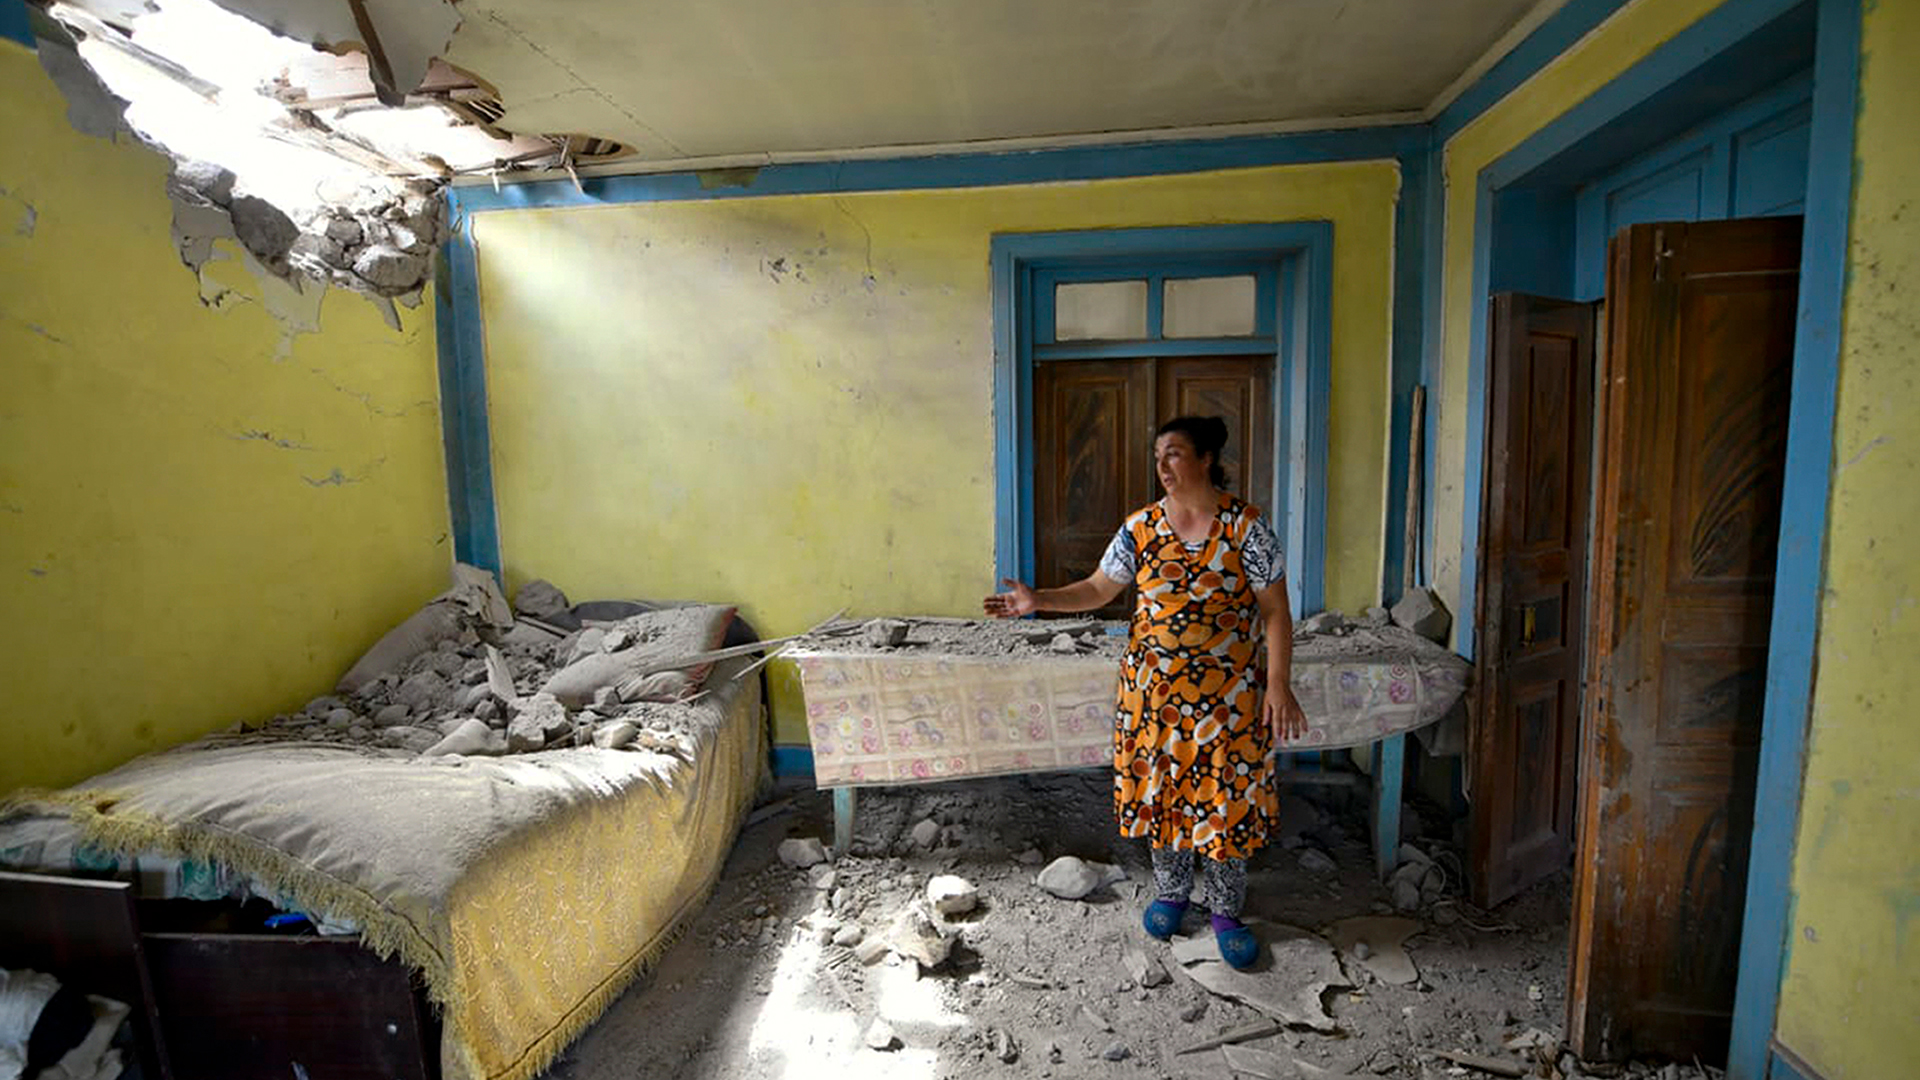 Una residente de la región de Tovuz, el Azerbaiyán, muestra los daños producidos en su casa por parte de la artillería armenia.
(AP Photo/Ramil Zeynalov)